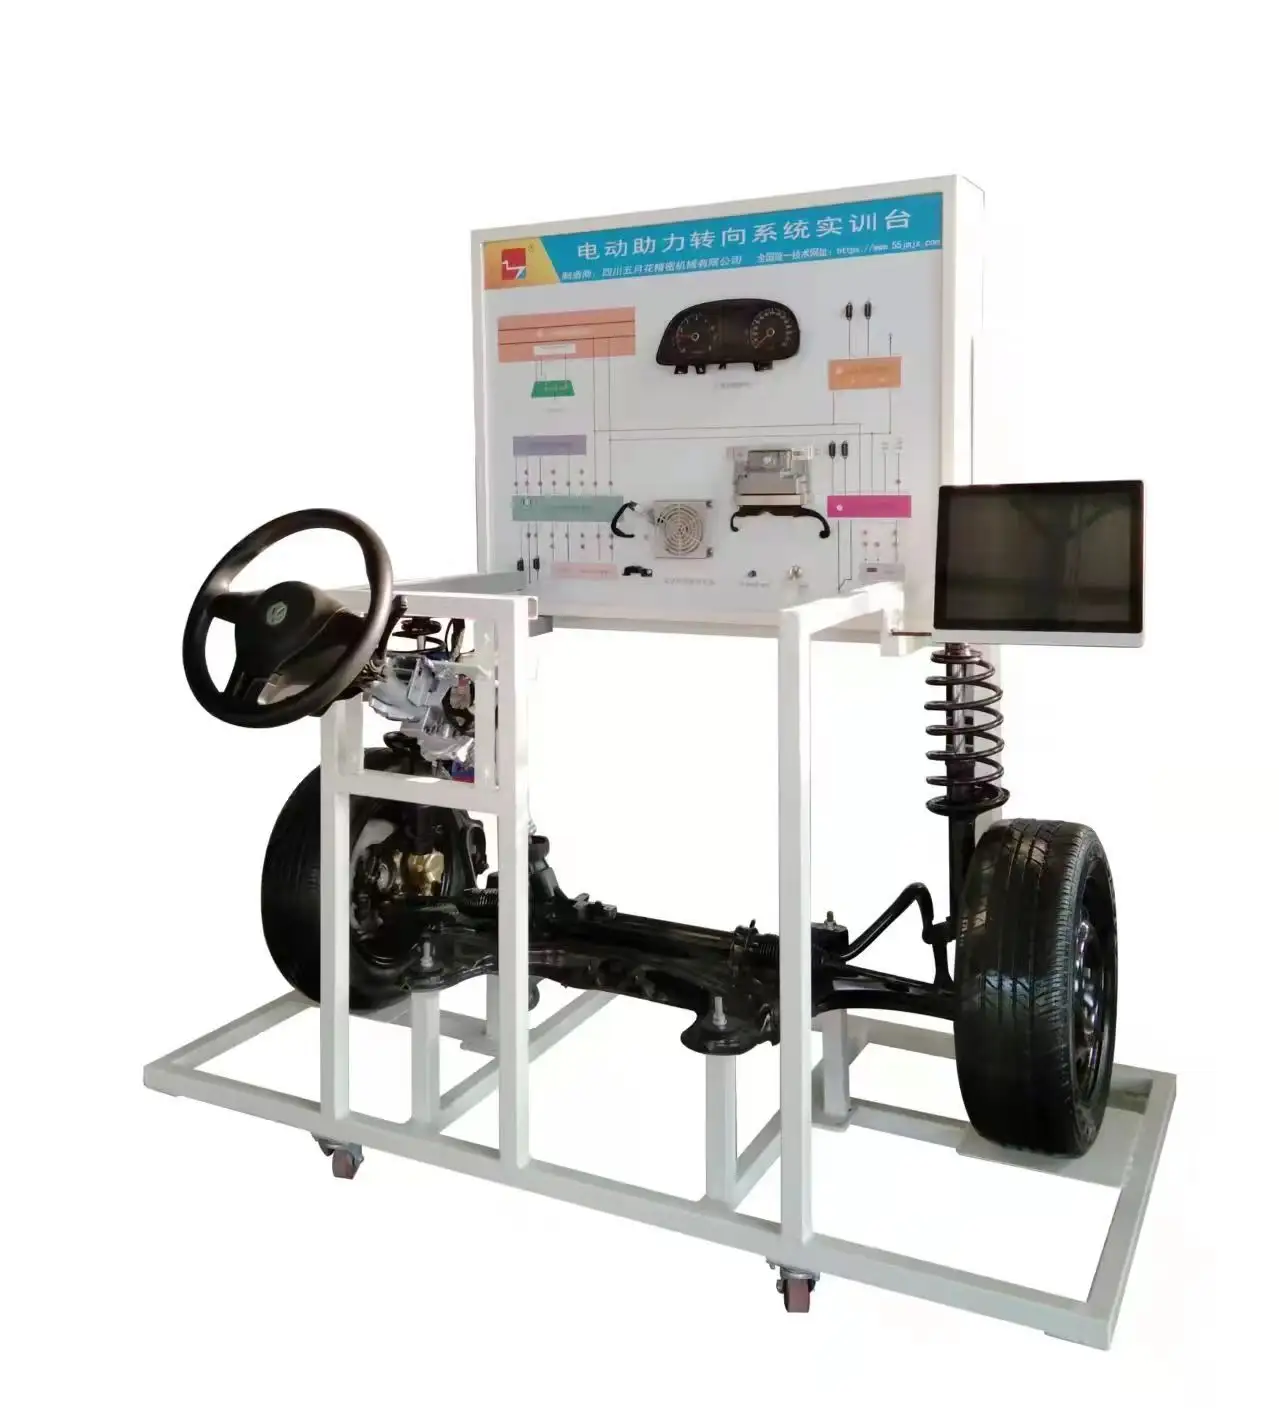 Otomotiv eğitim ekipmanları elektrikli araç elektrikli hidrolik direksiyon eğitmeni eğitim ekipmanları okul için